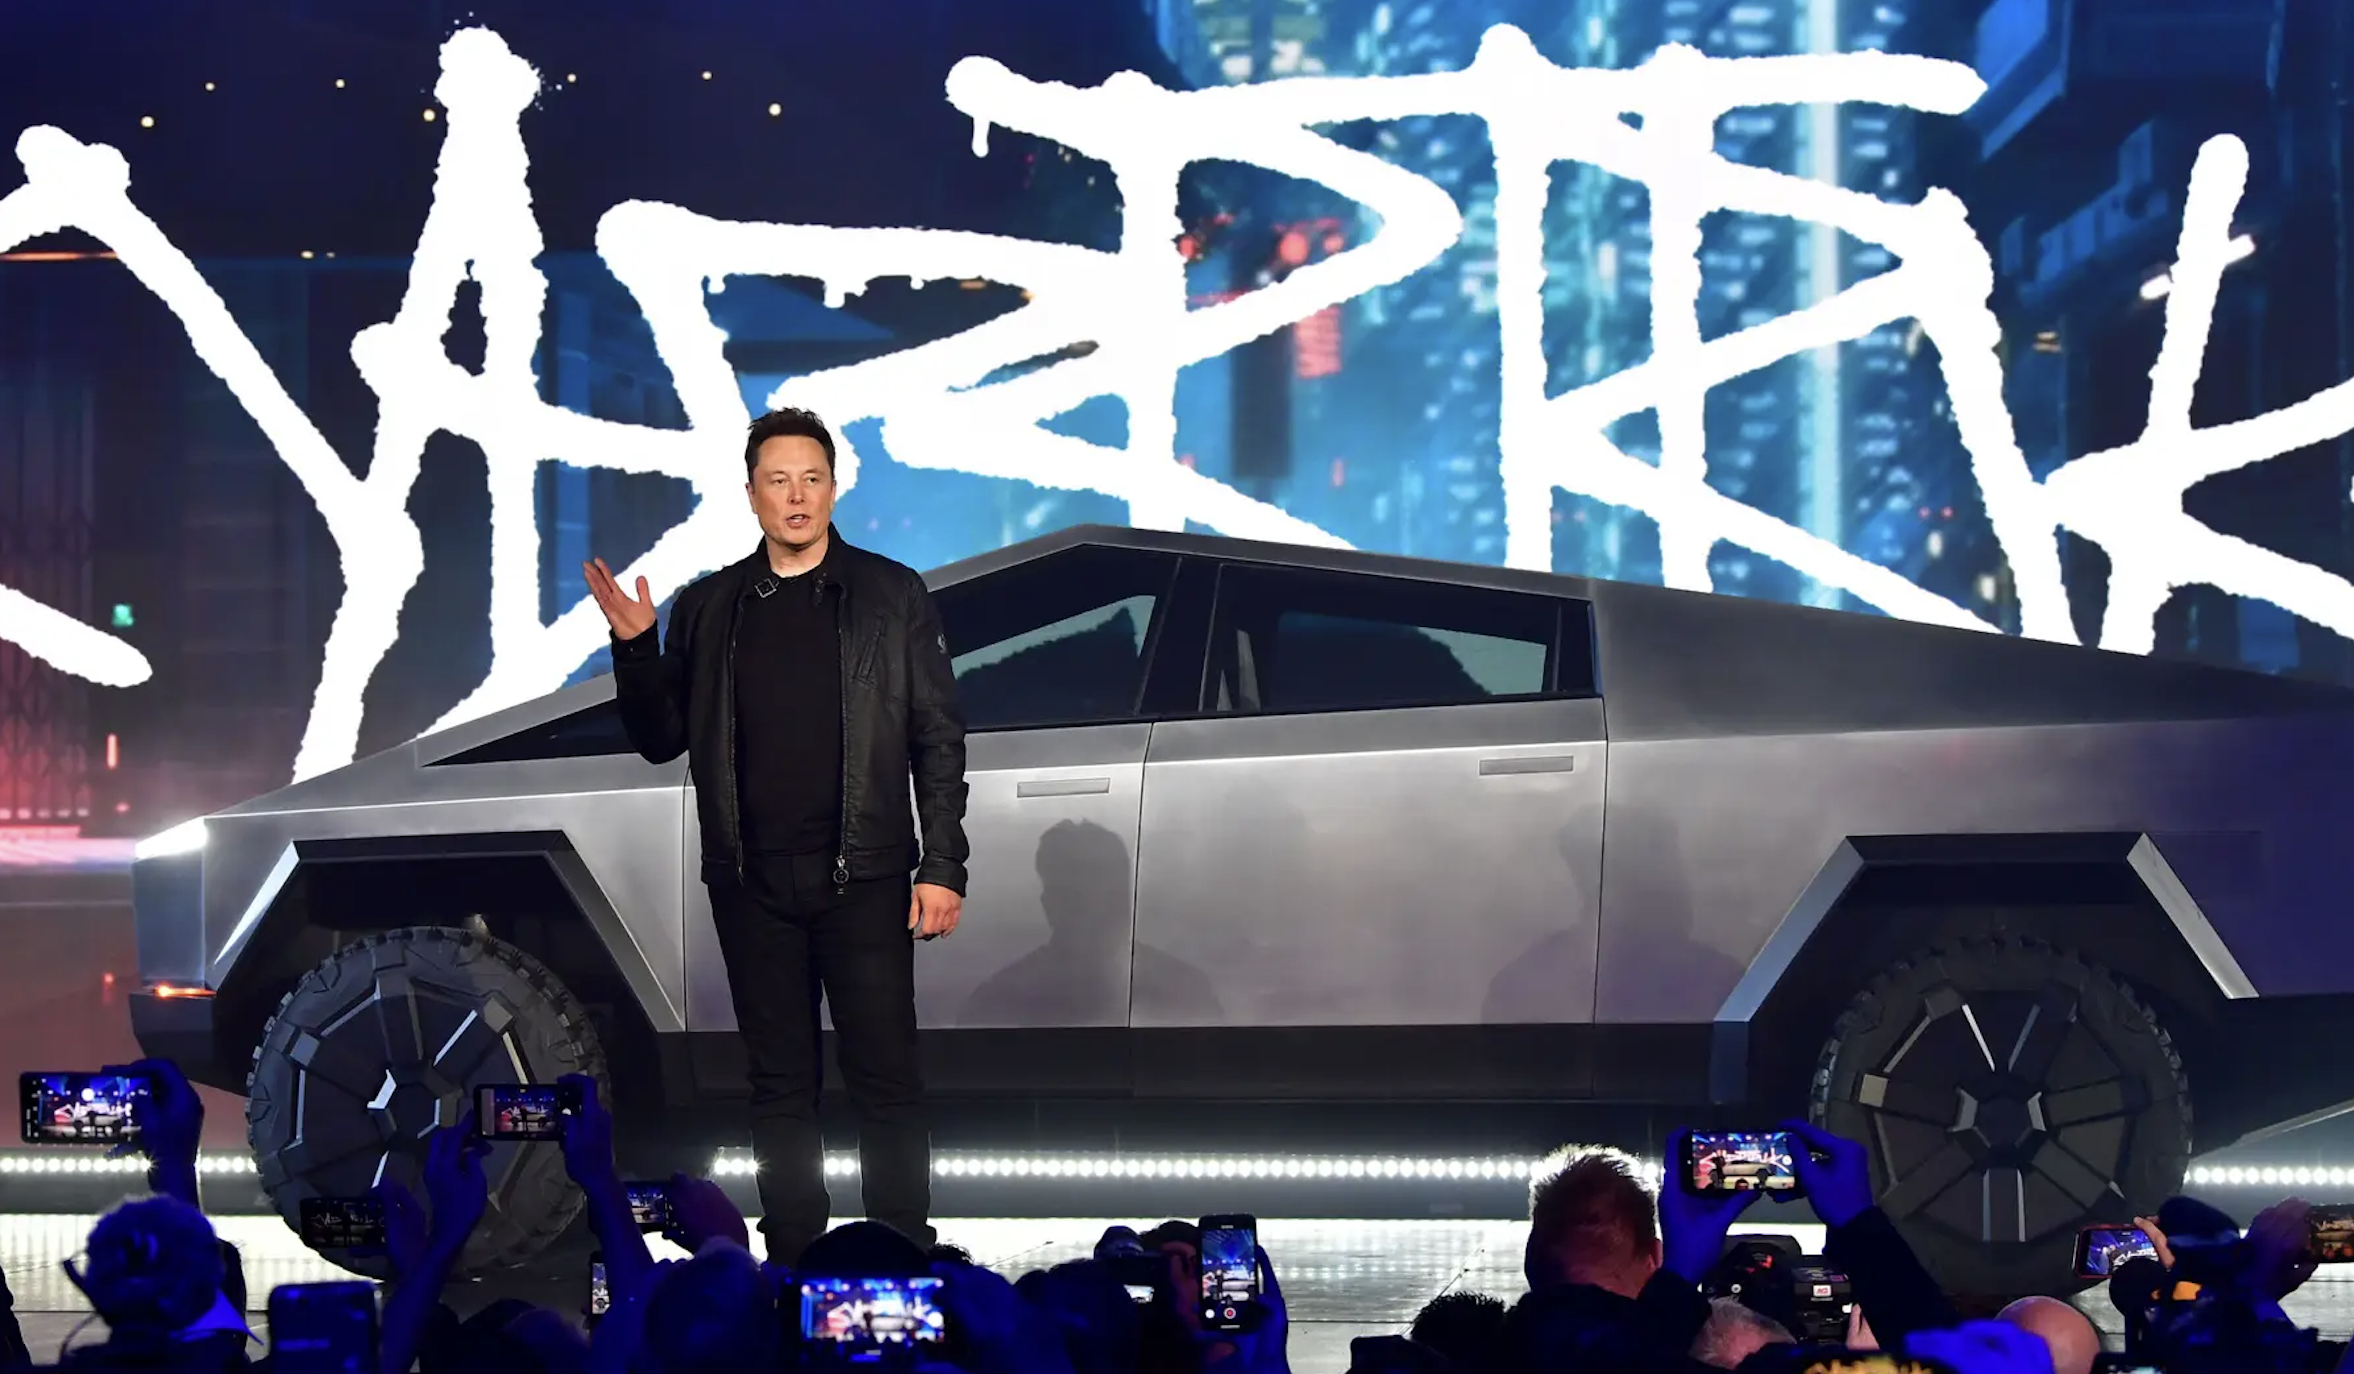 Elon Musk khơi mào cuộc chiến đưa giá xe điện xuống đáy